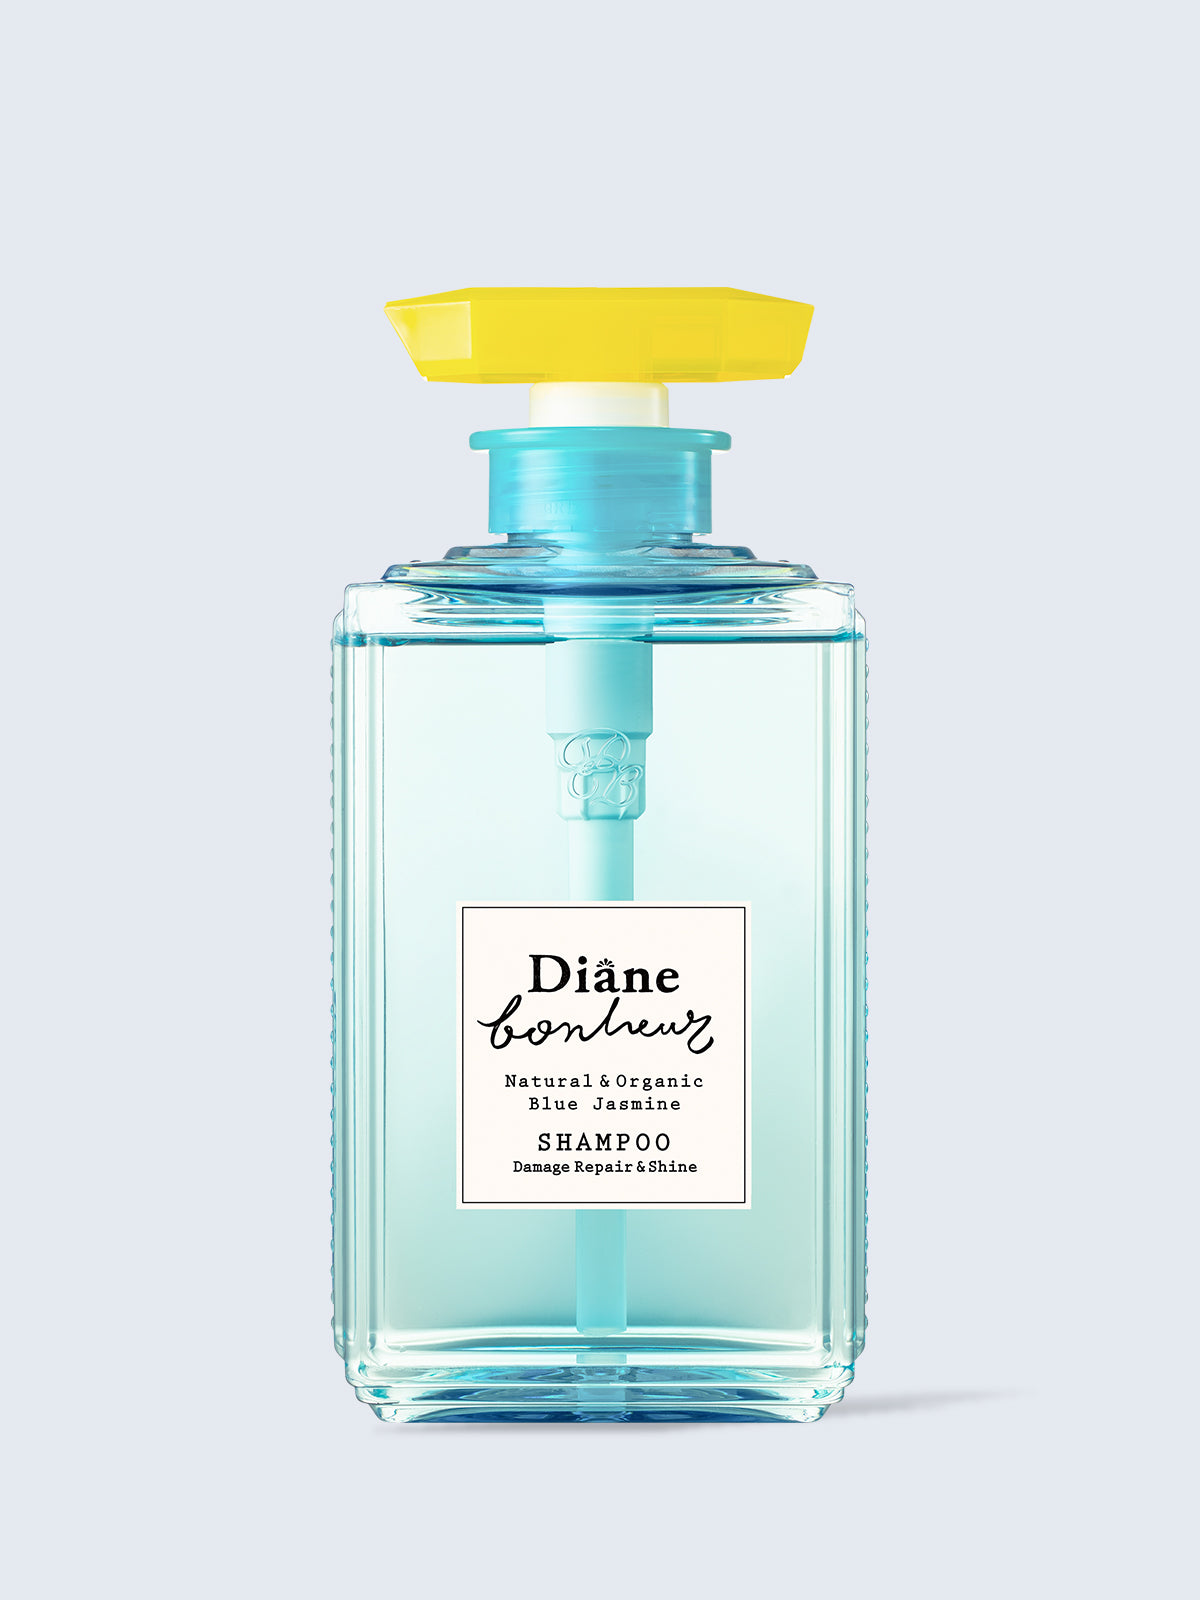 シャンプー [ダメージリペア＆シャイン] ブルージャスミンの香り ダイアンボヌール 500mL - NatureLab Store